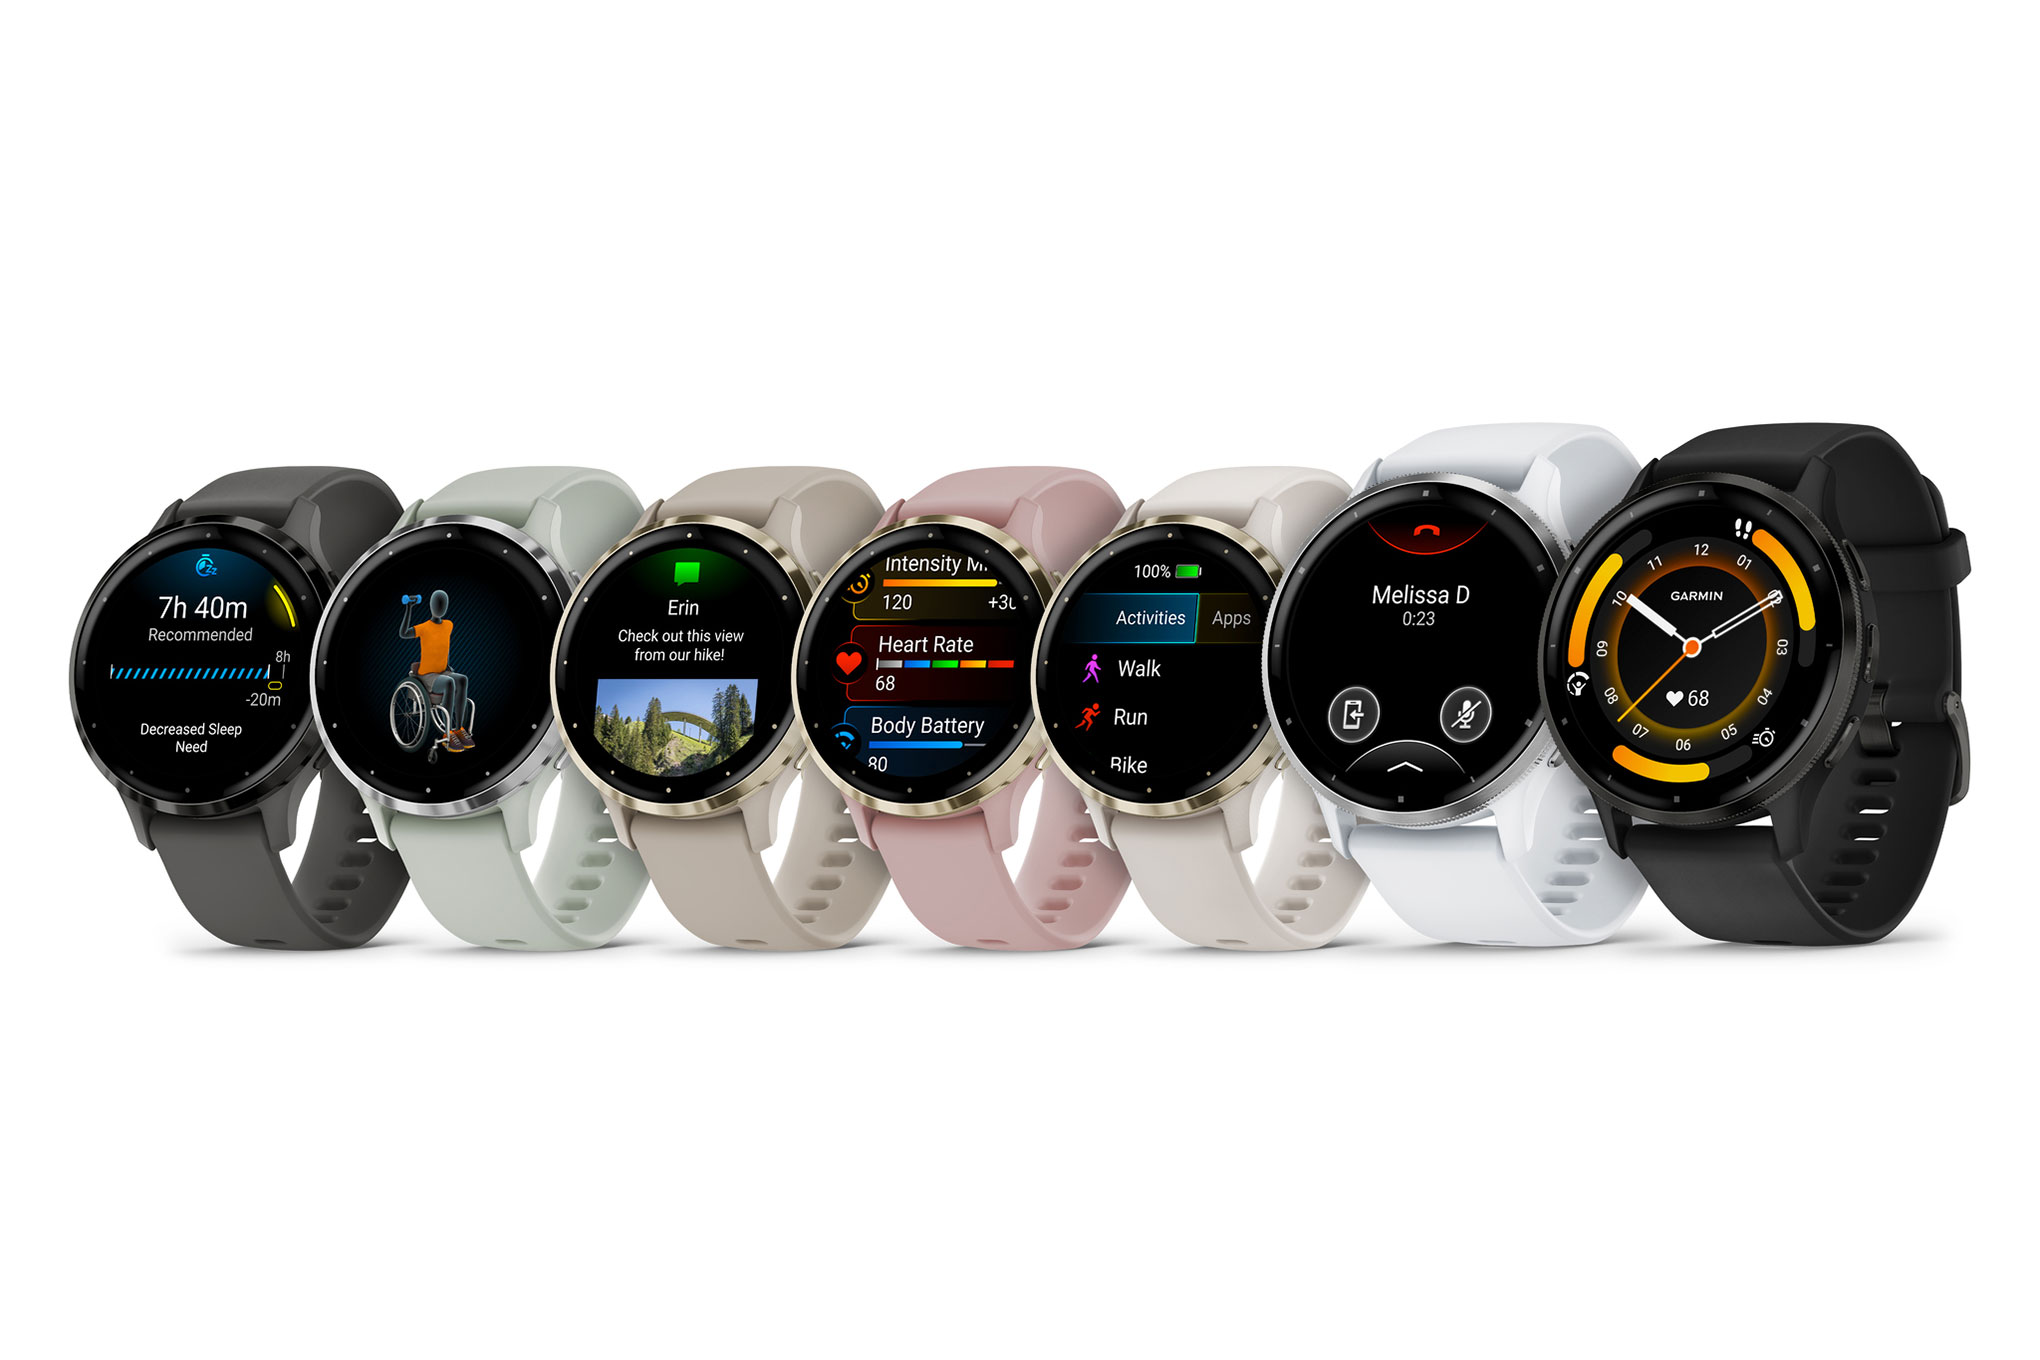 Годинник Garmin Venu 3 отримав рекомендації для сну, режим інвалідного візка та ціну $450